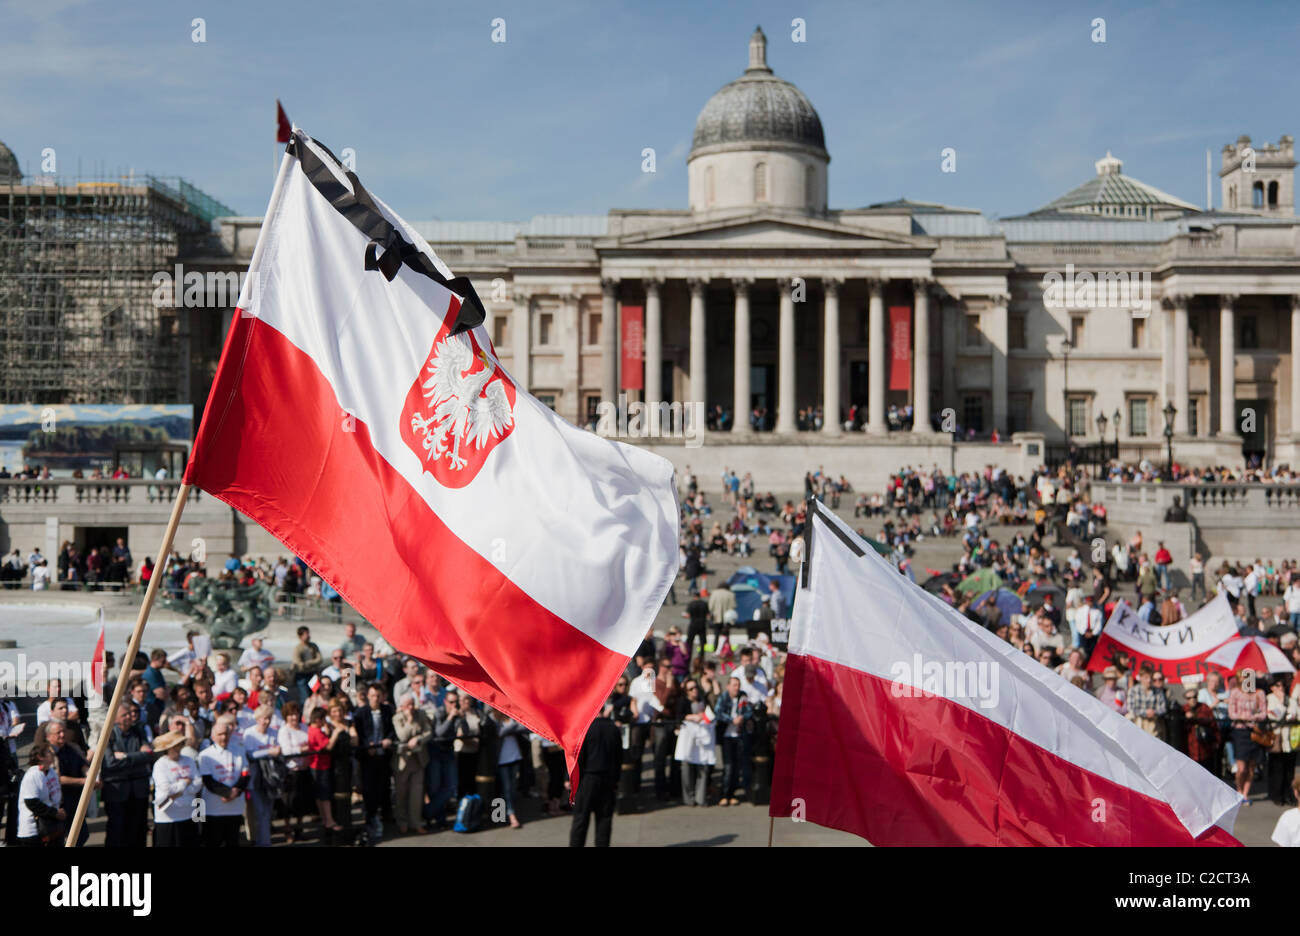 Démonstration de la Pologne, en face de la National Gallery, Trafalgar Square, London, UK Banque D'Images